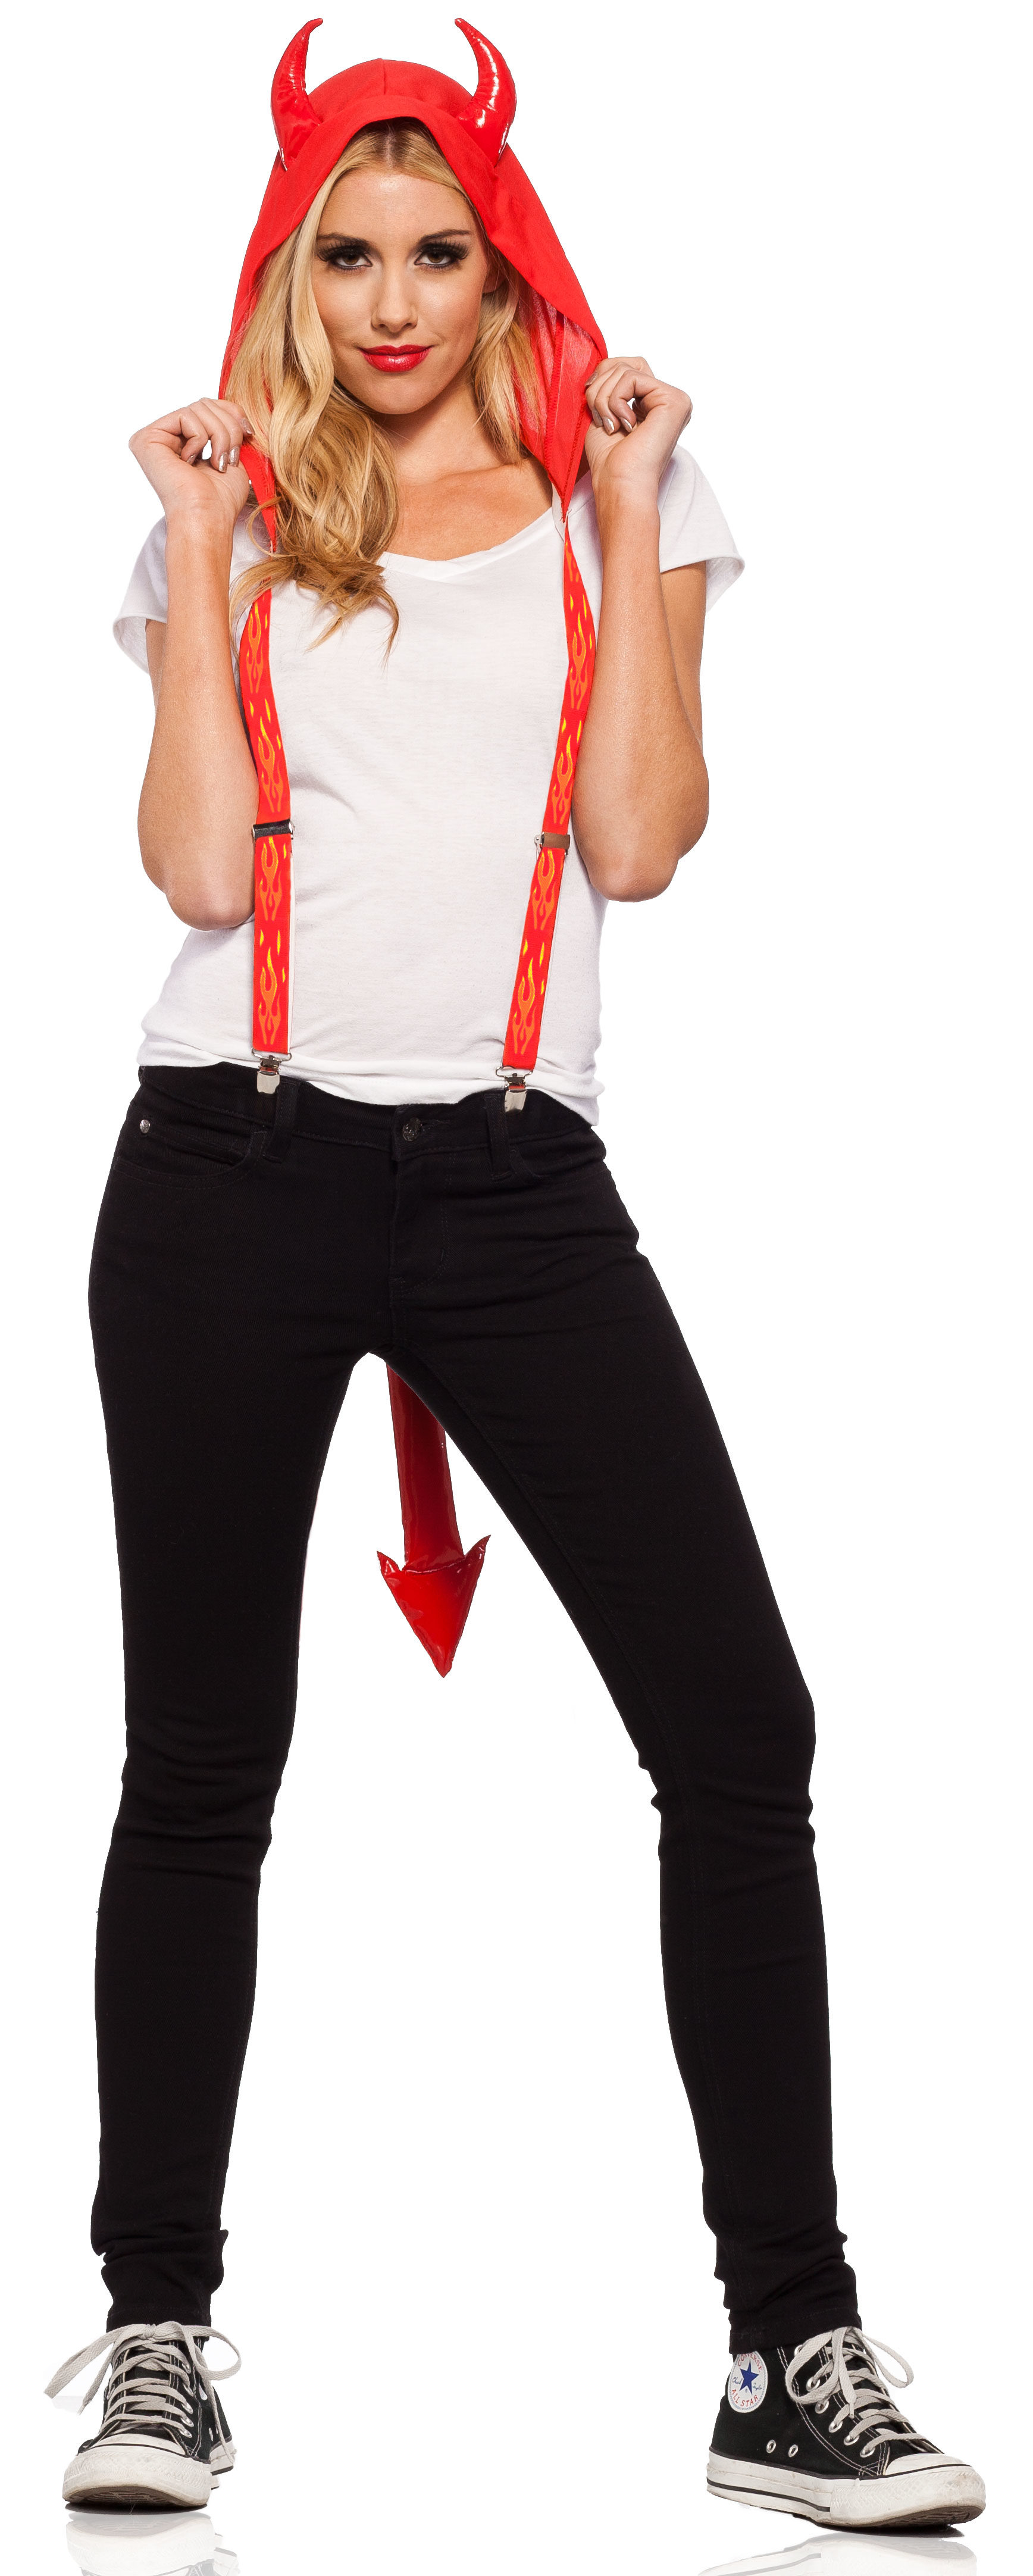 red suspenders costume